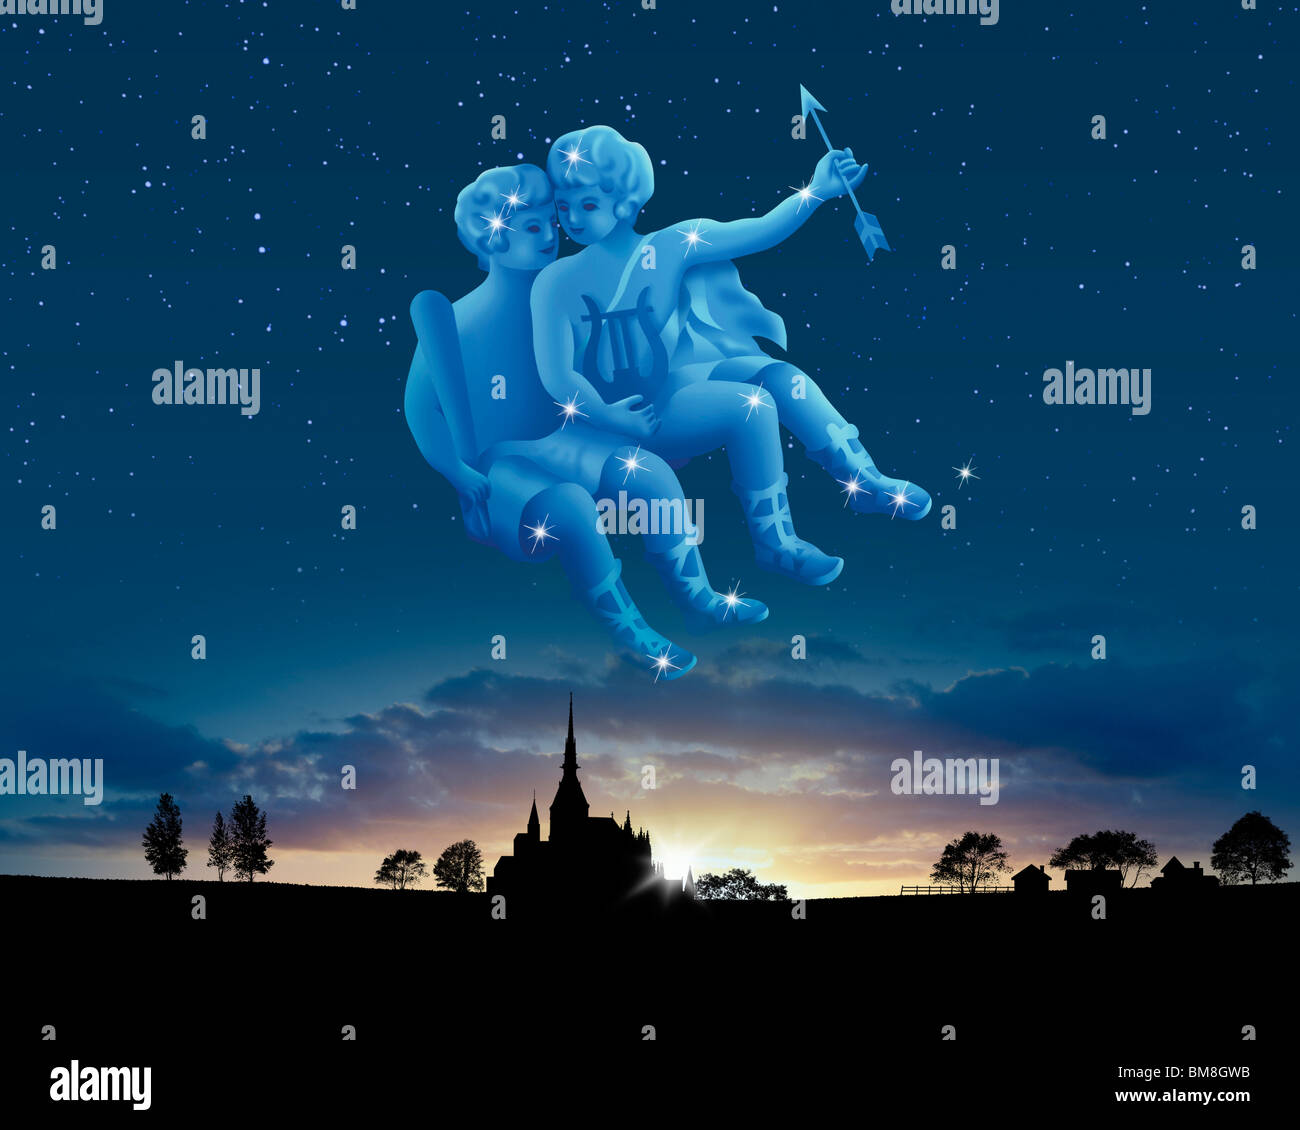 Immagine del segno di astrologia, Gemini Foto Stock